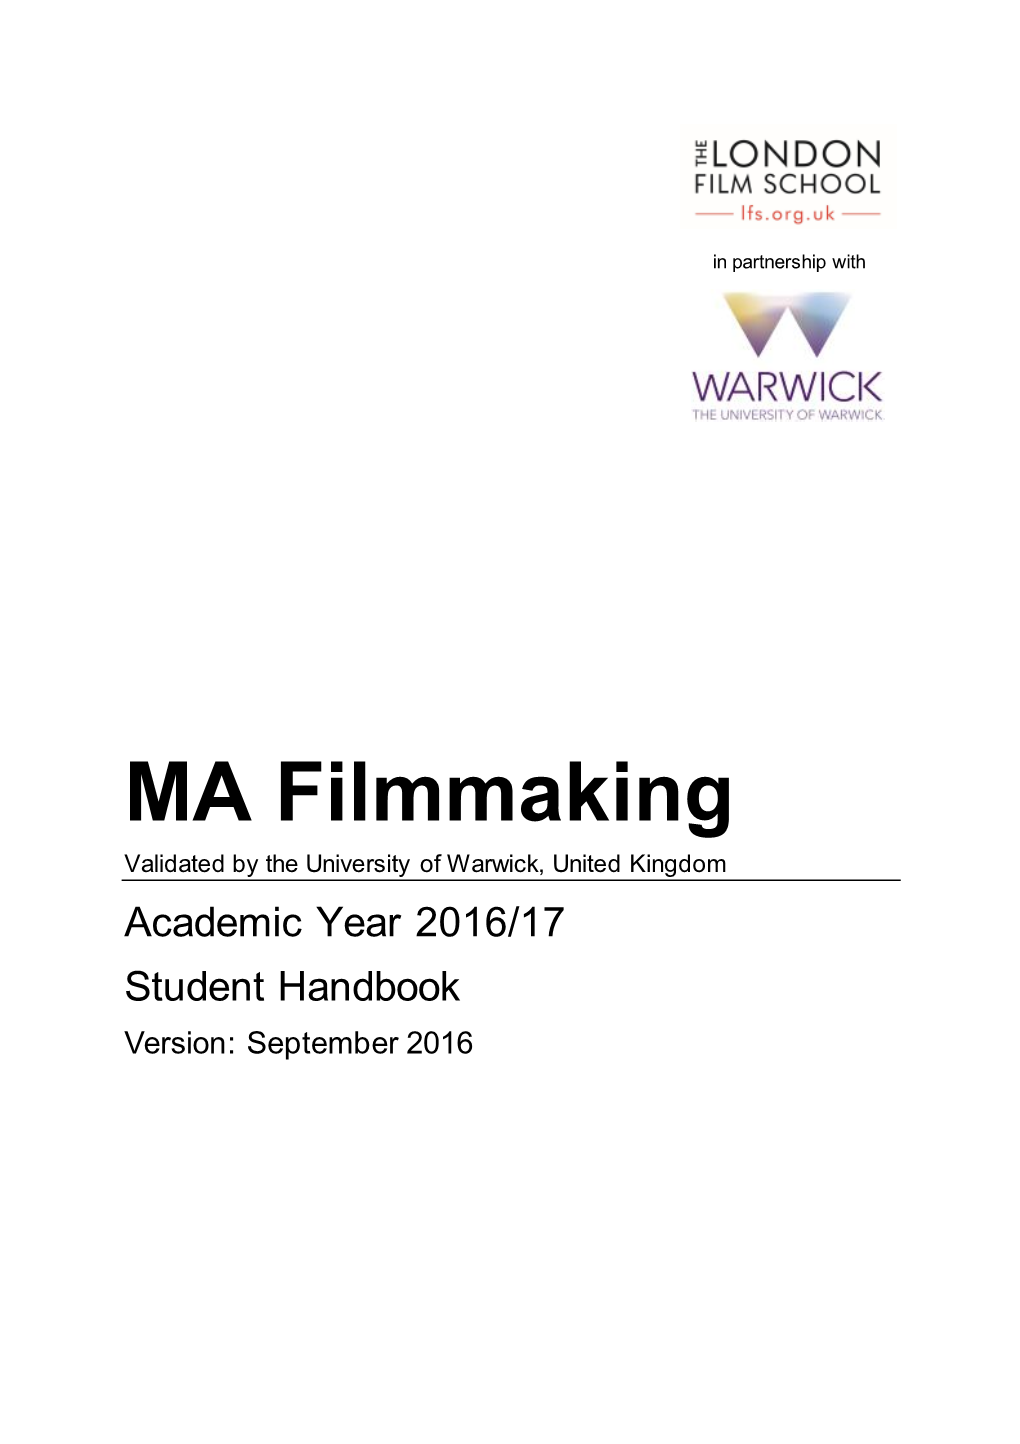 MA Filmmaking Student Handbook 2016/17, Final 1